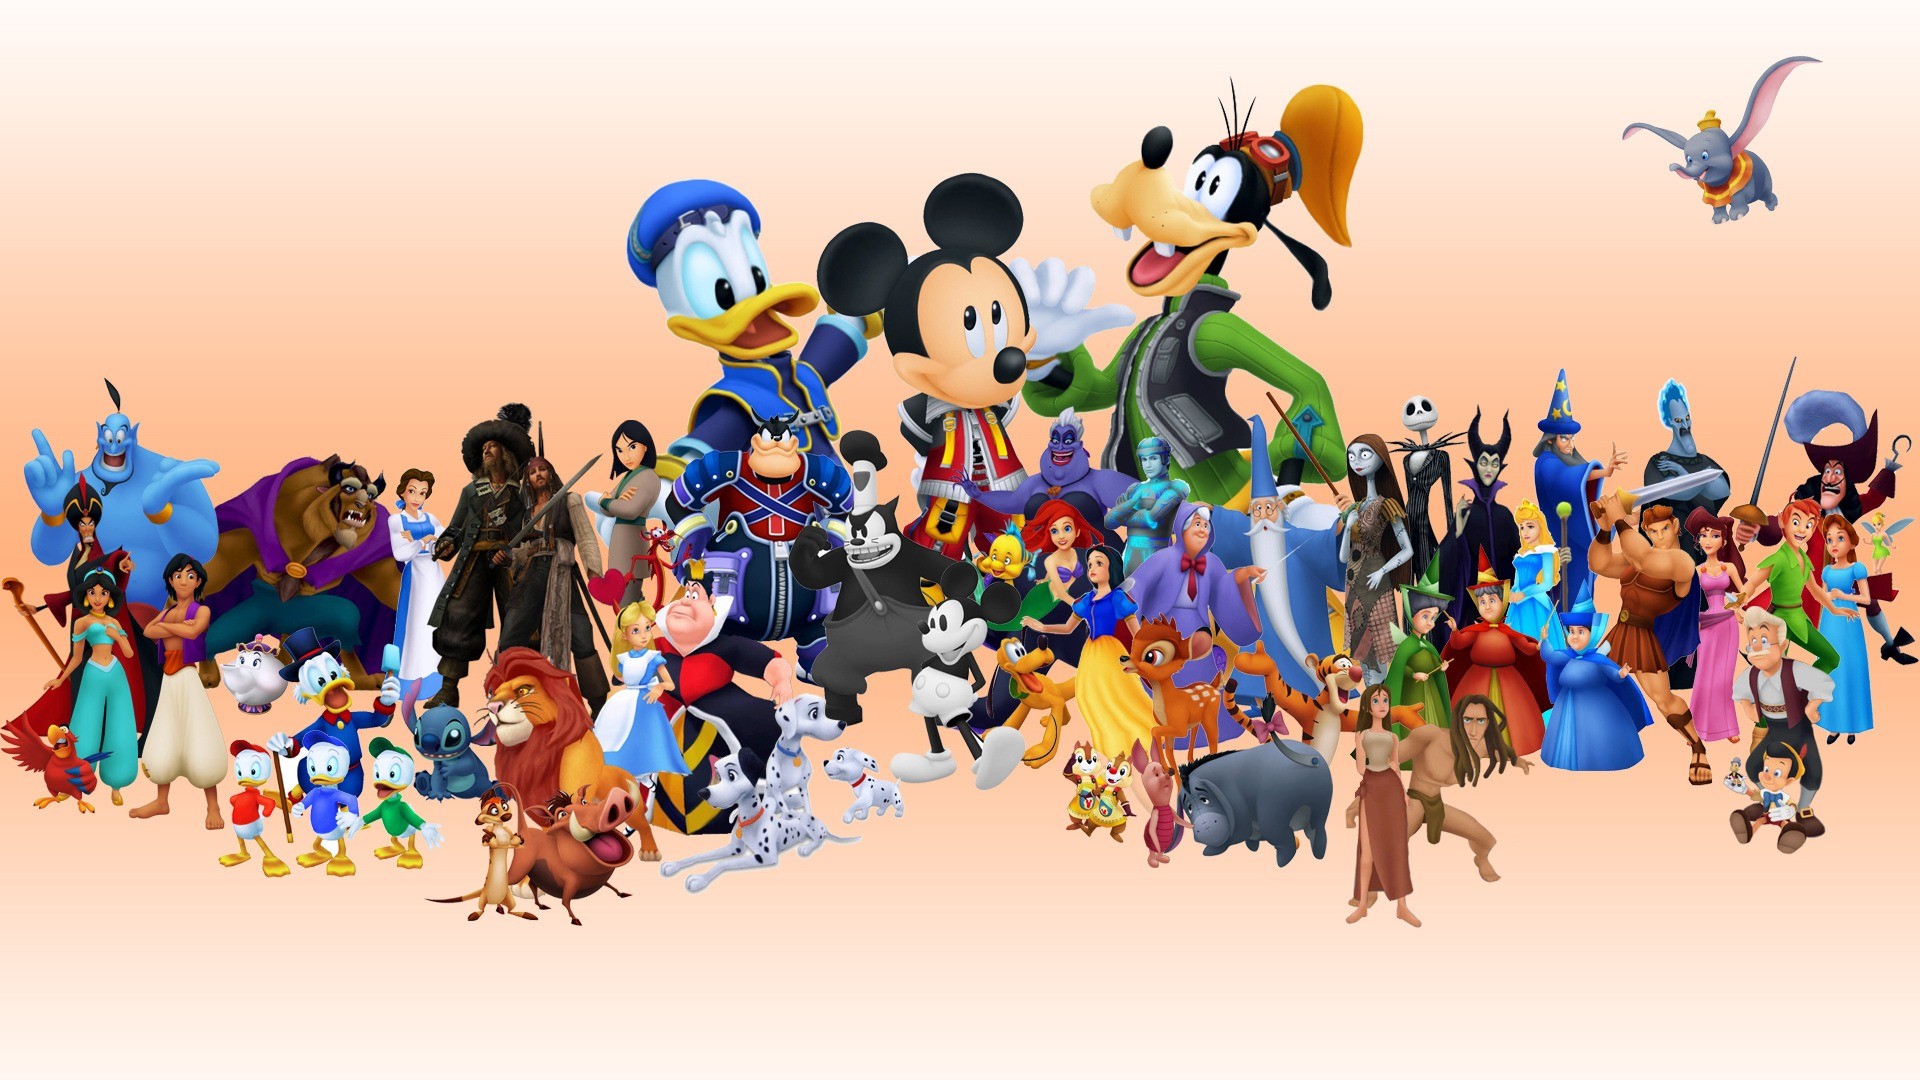 1920x1080 ... Kingdom Hearts 358/2 Days - Fanart - Background ...